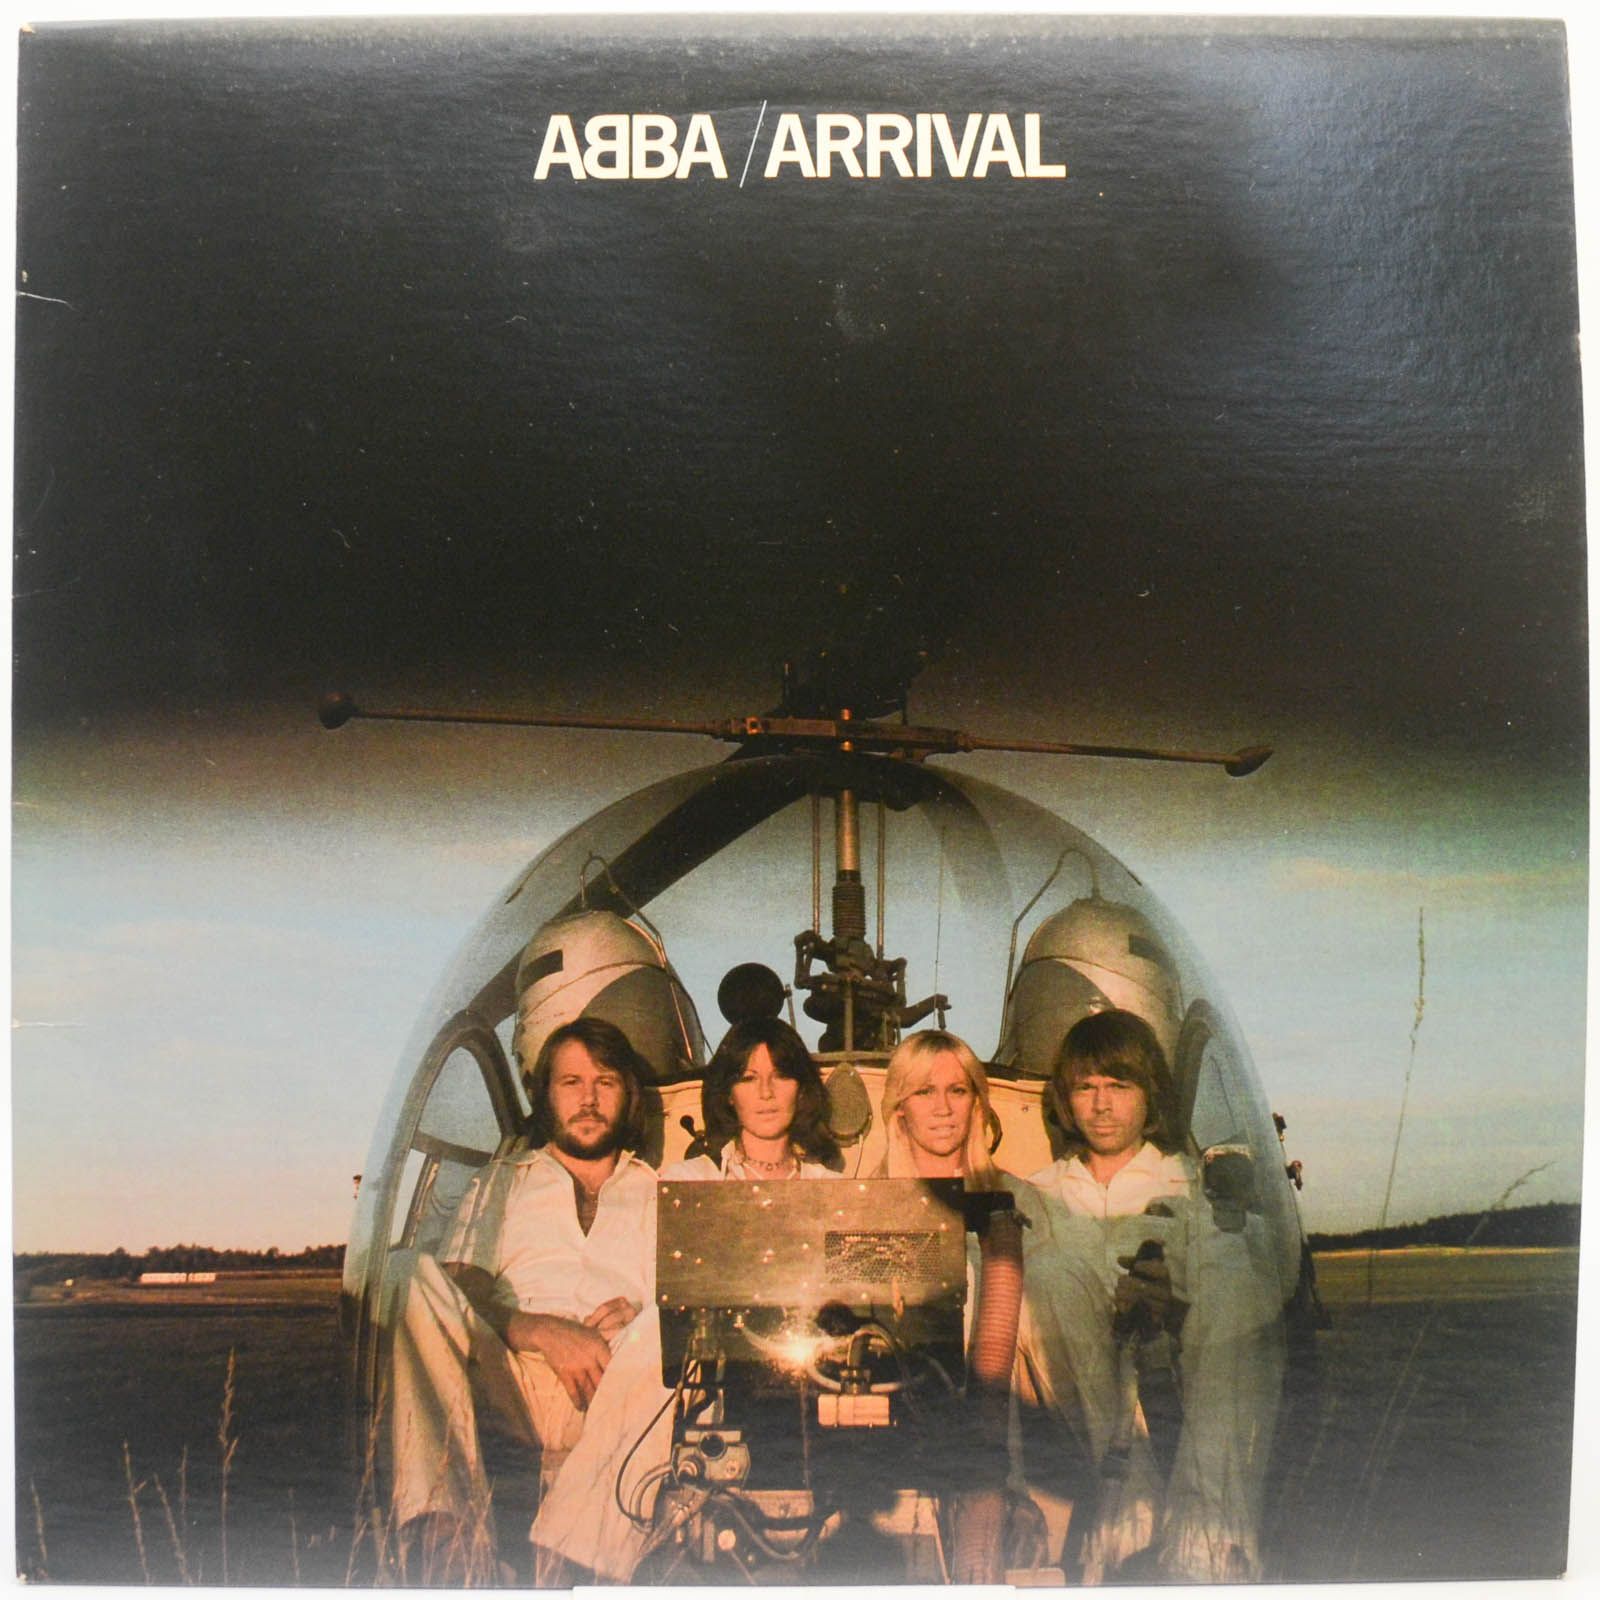 ABBA — Arrival (USA), 1976